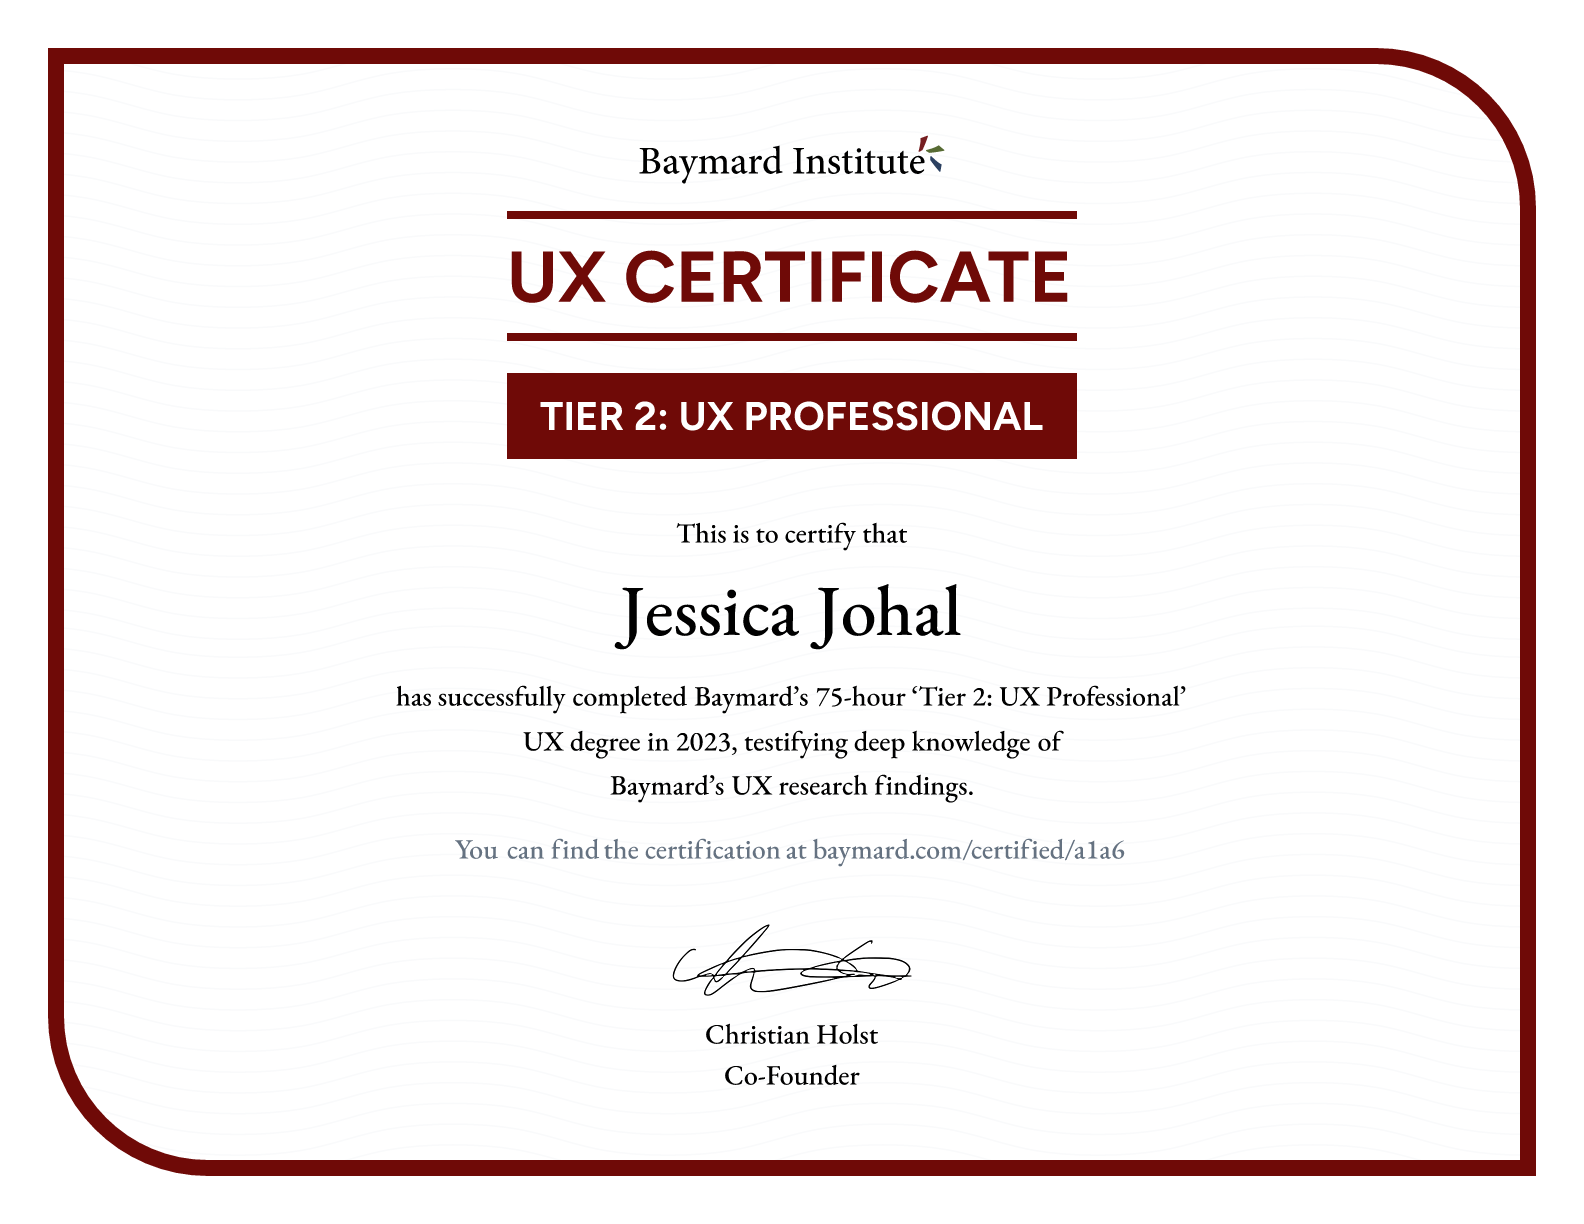 Jessica Johal’s certificate